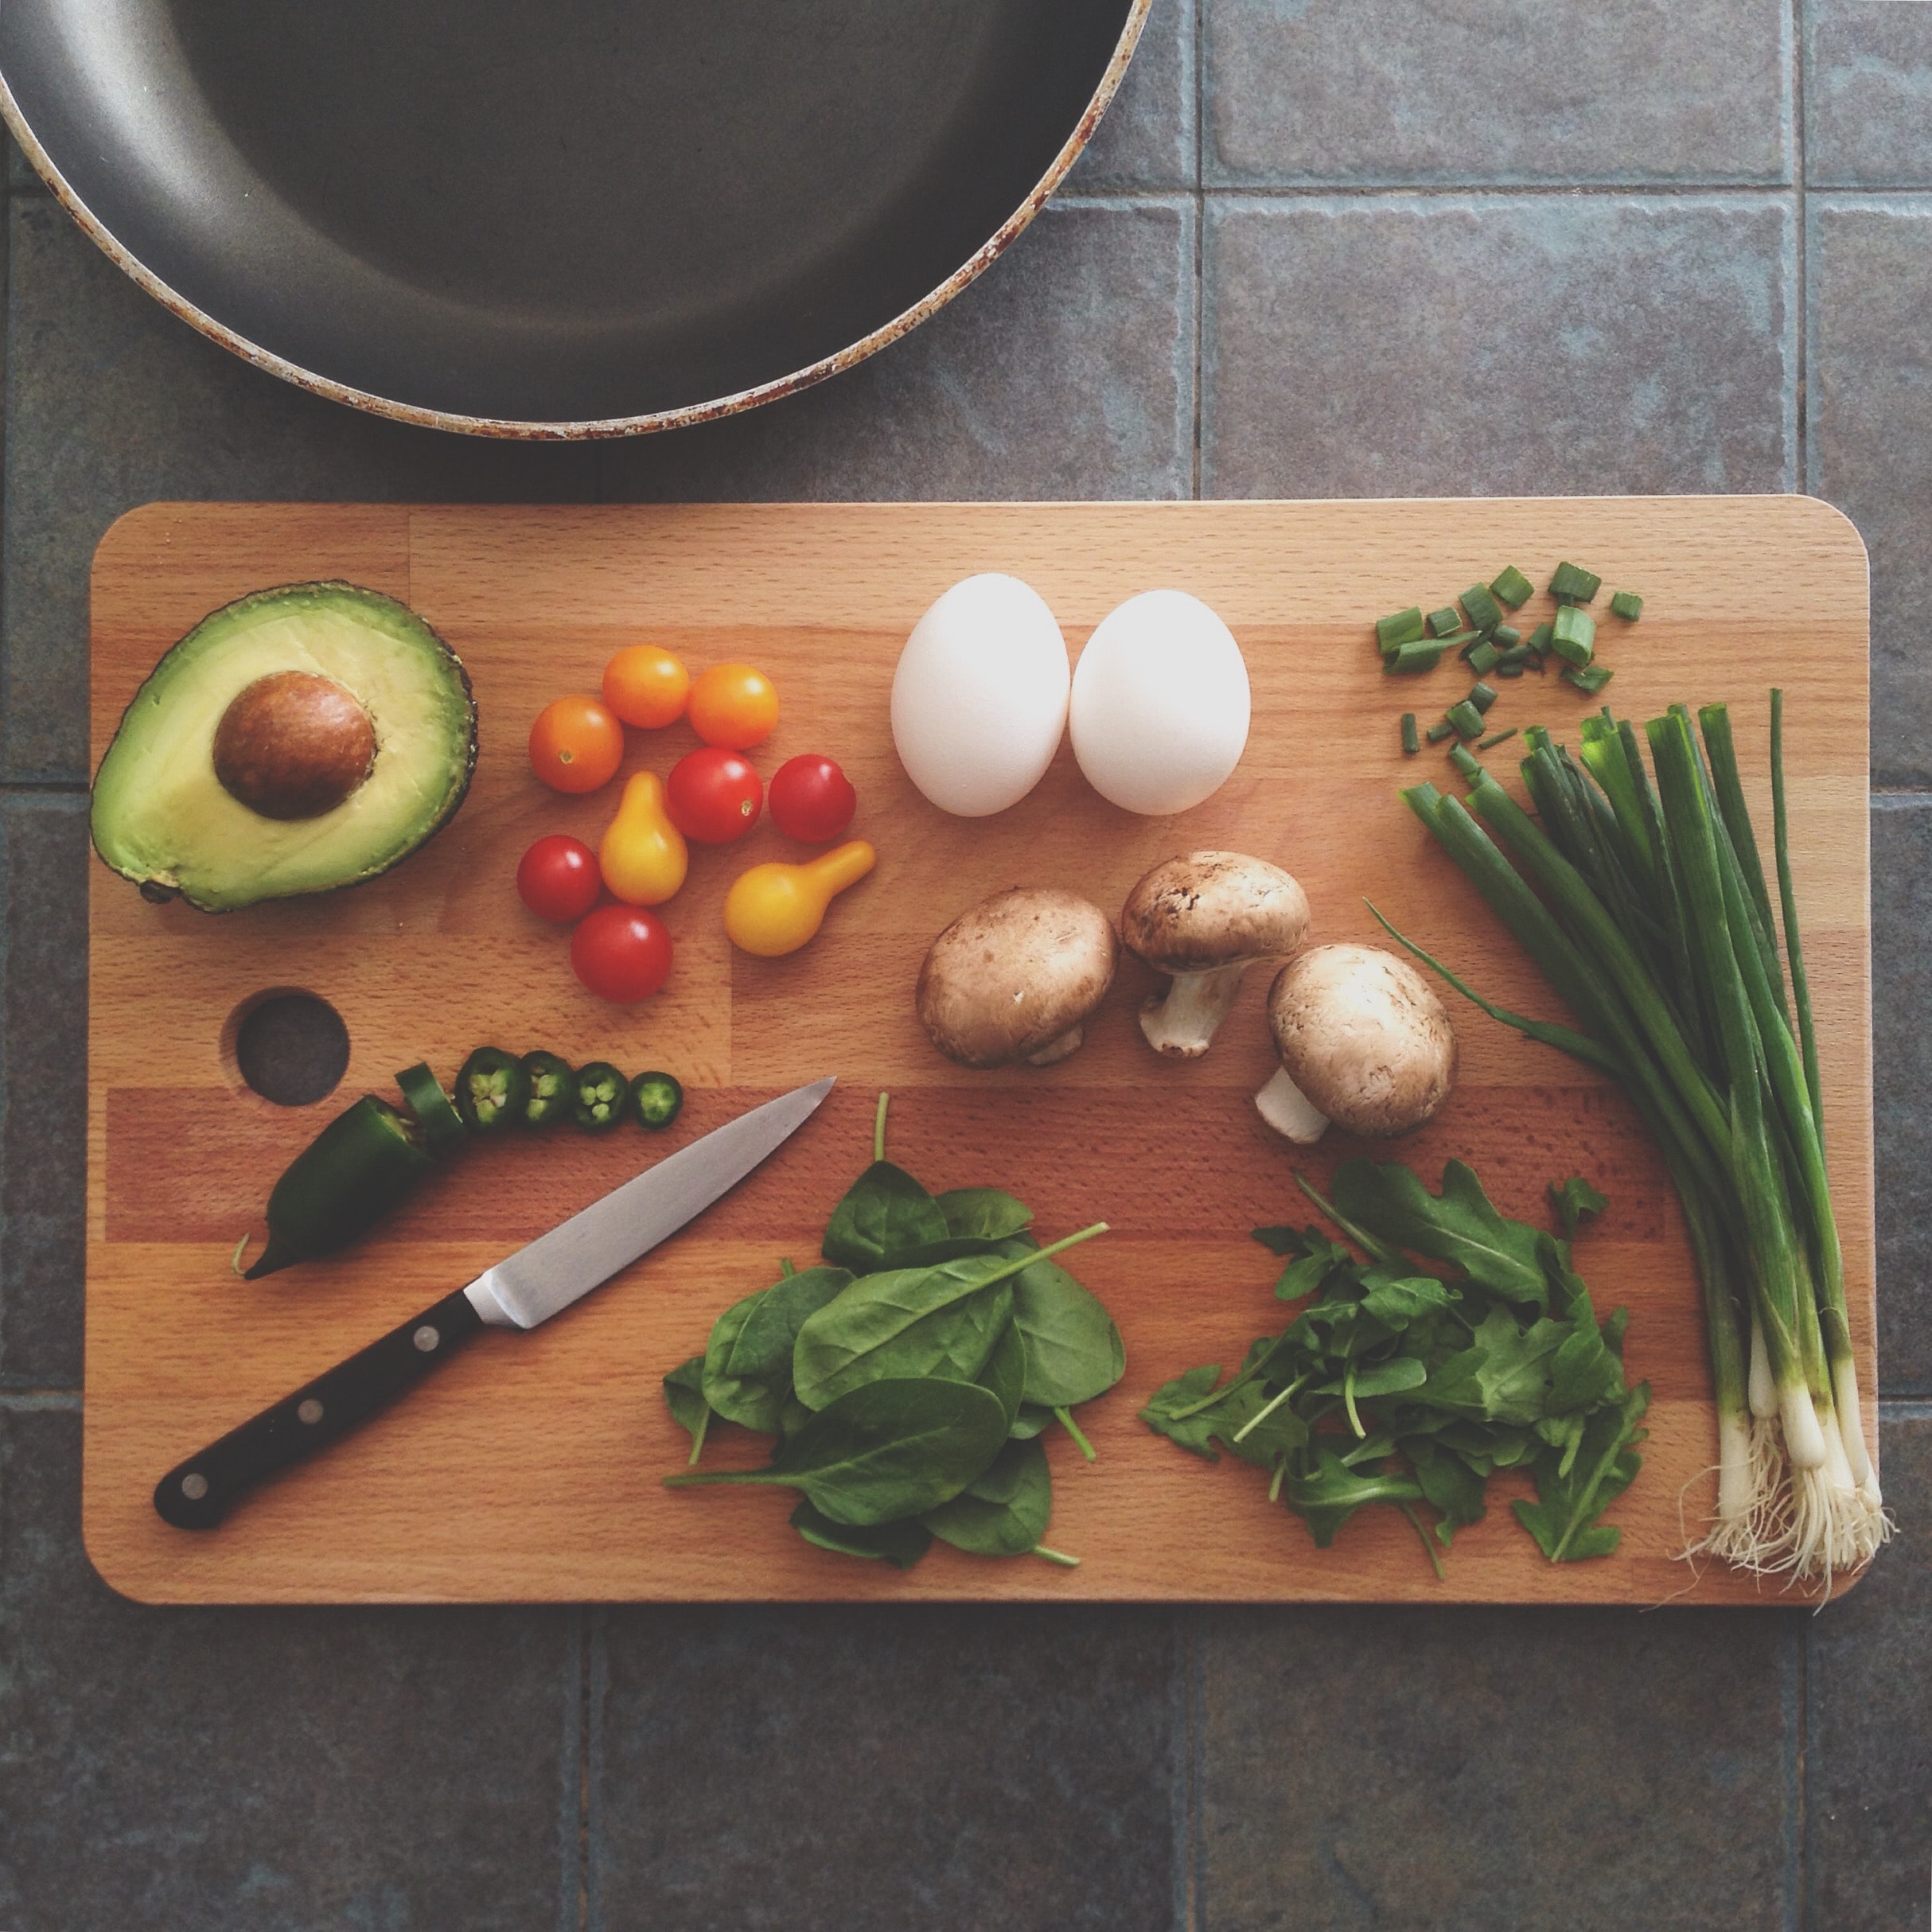 Tabla de cortar con verduras, huevo y un cuchillo 